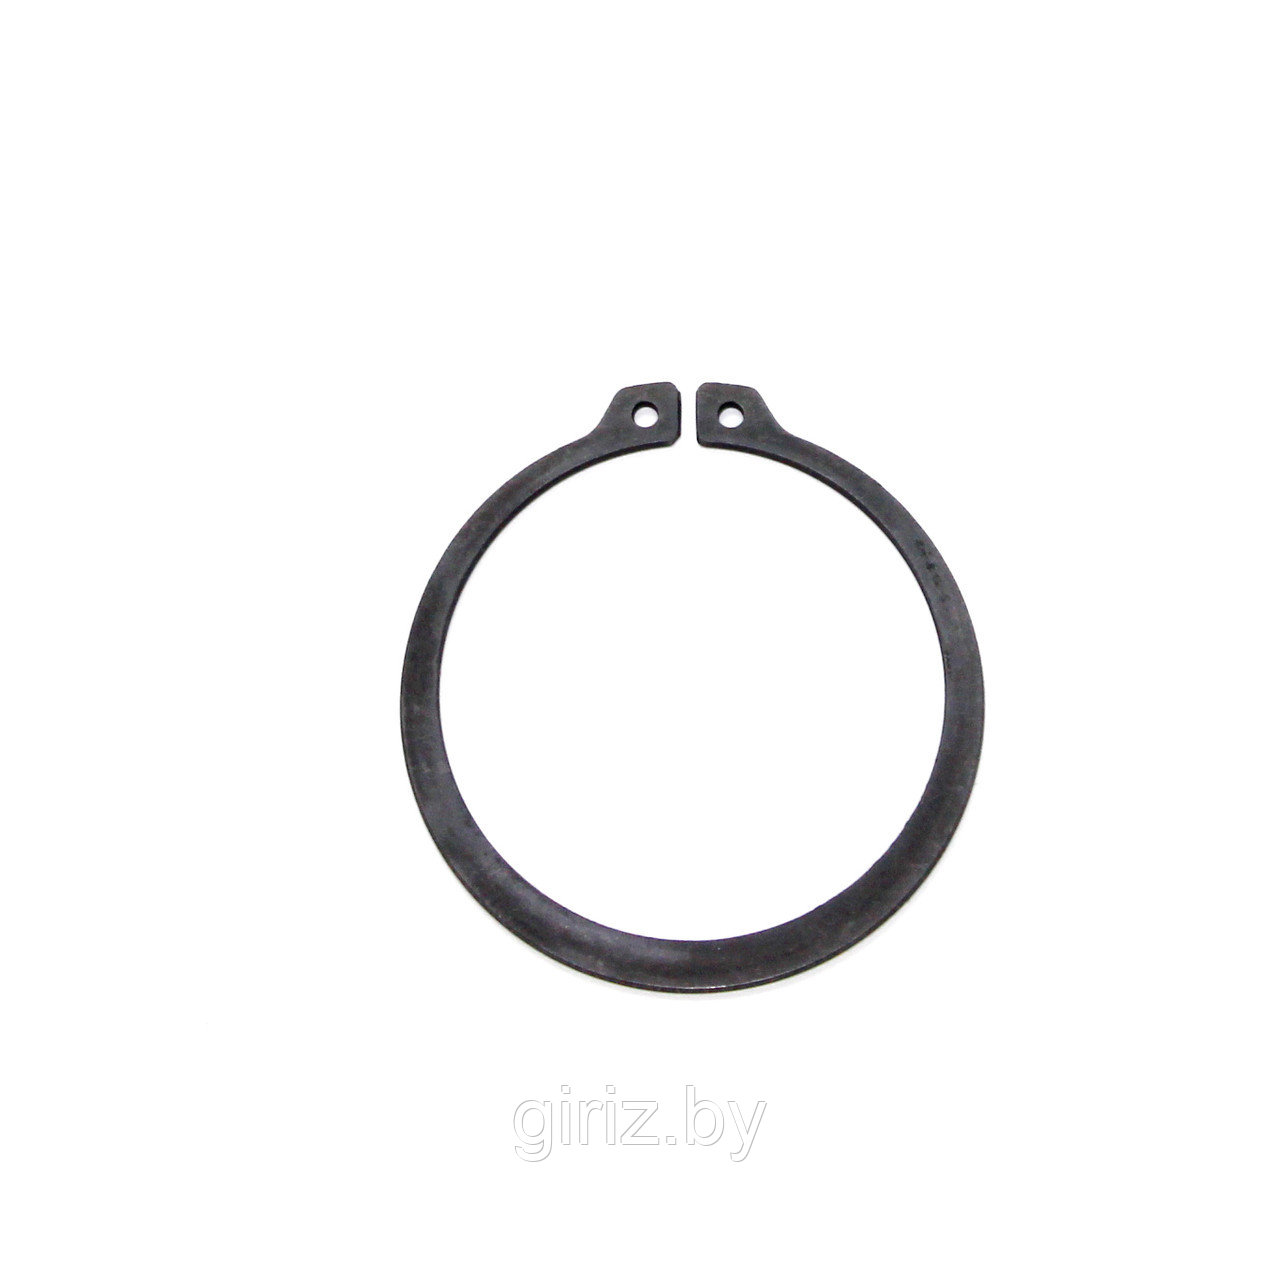 Стопорное кольцо DIN 471 98 мм (с ушками)